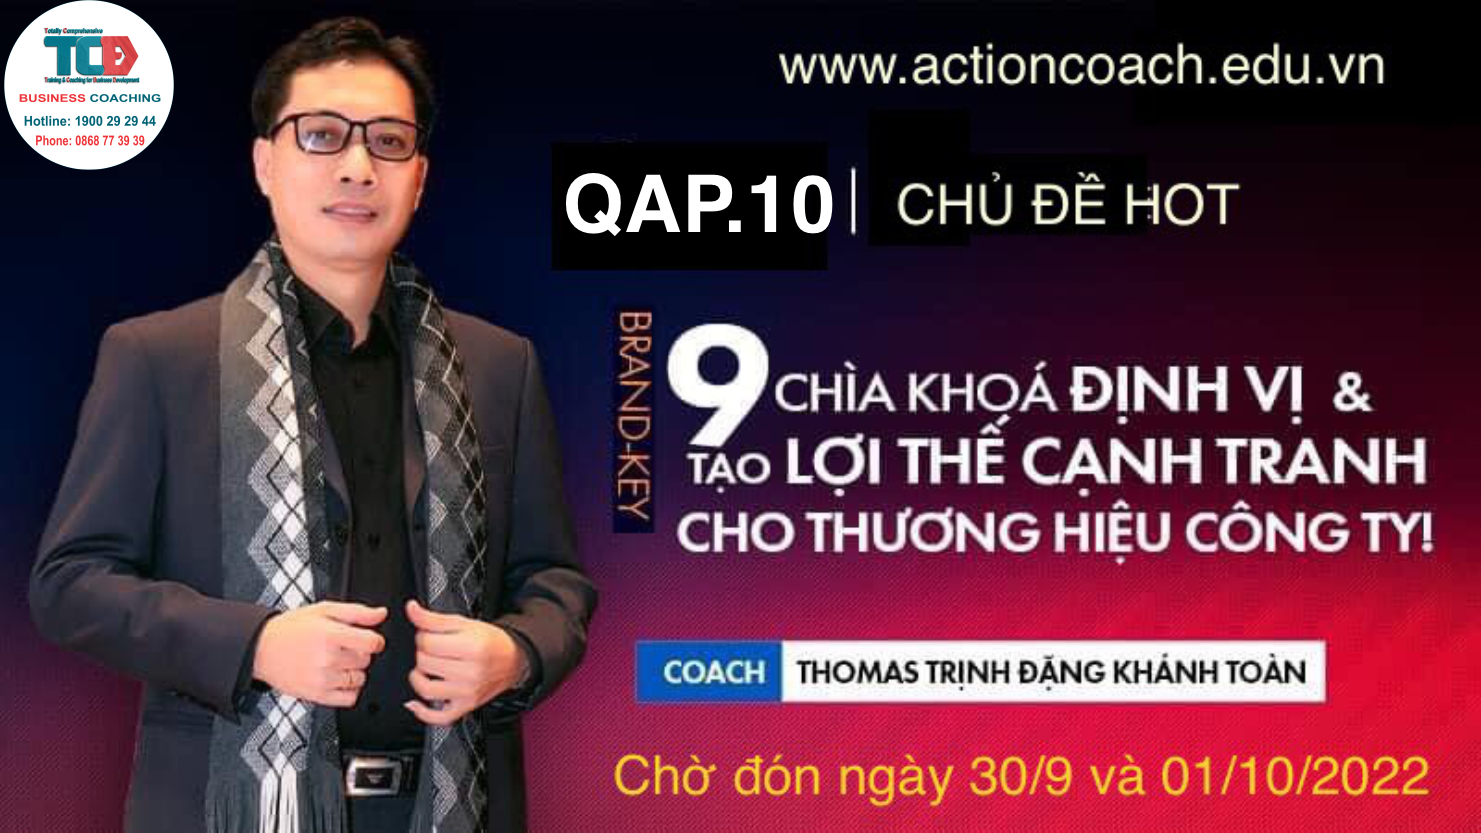 nhà huấn luyện Thomas Trịnh Toàn chia sẻ tại ngày lập kế hoạch hành động quý 4